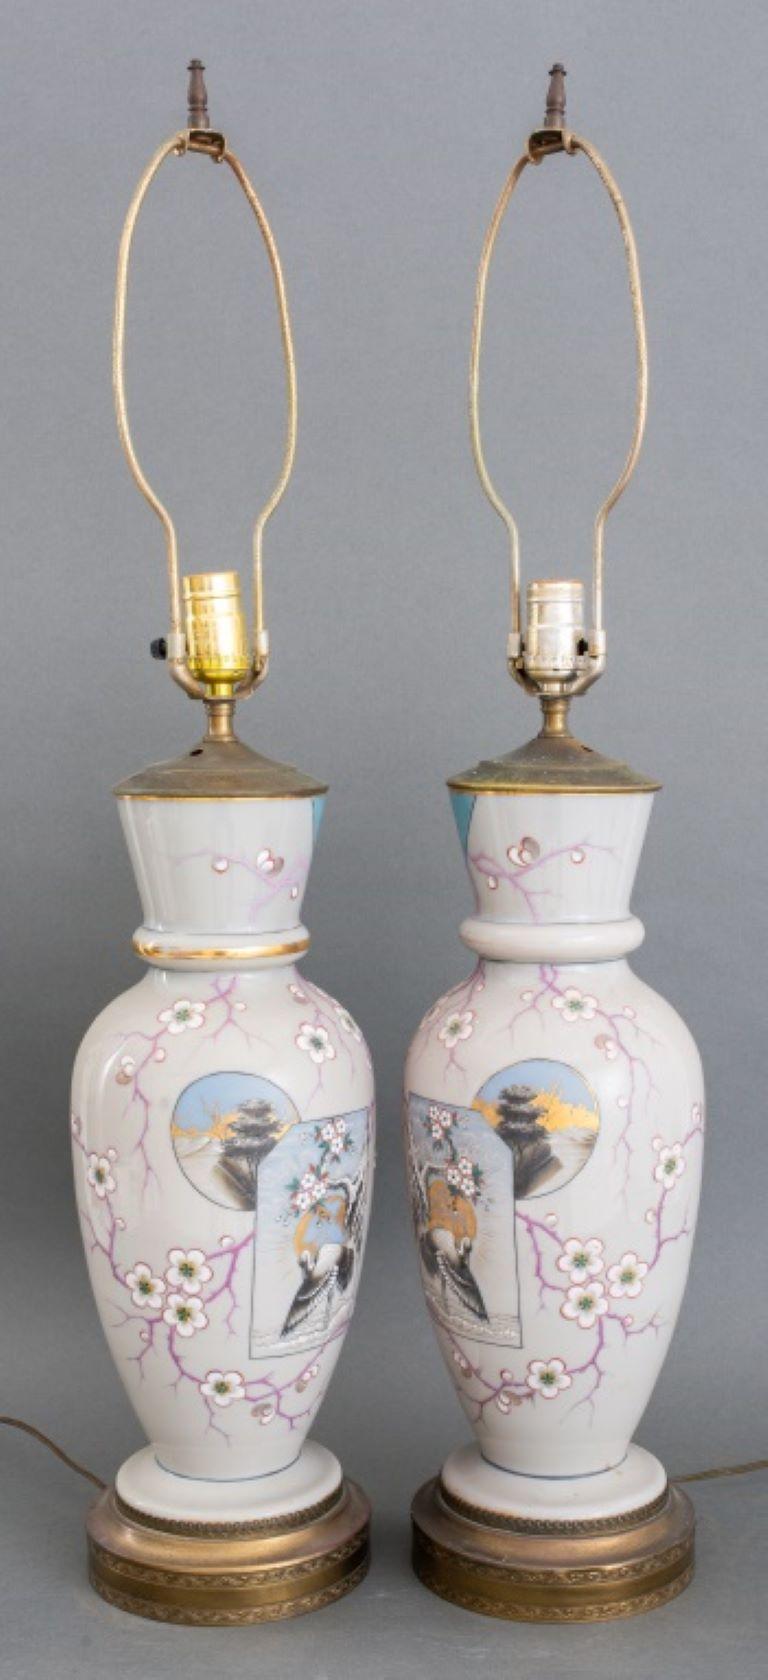 Paire de vases balustres en porcelaine céramique du mouvement esthétique japonais, peints à la main de motifs de fleurs de cerisier et de hérons, aujourd'hui montés comme lampes de table et reposant sur des bases en métal doré. 